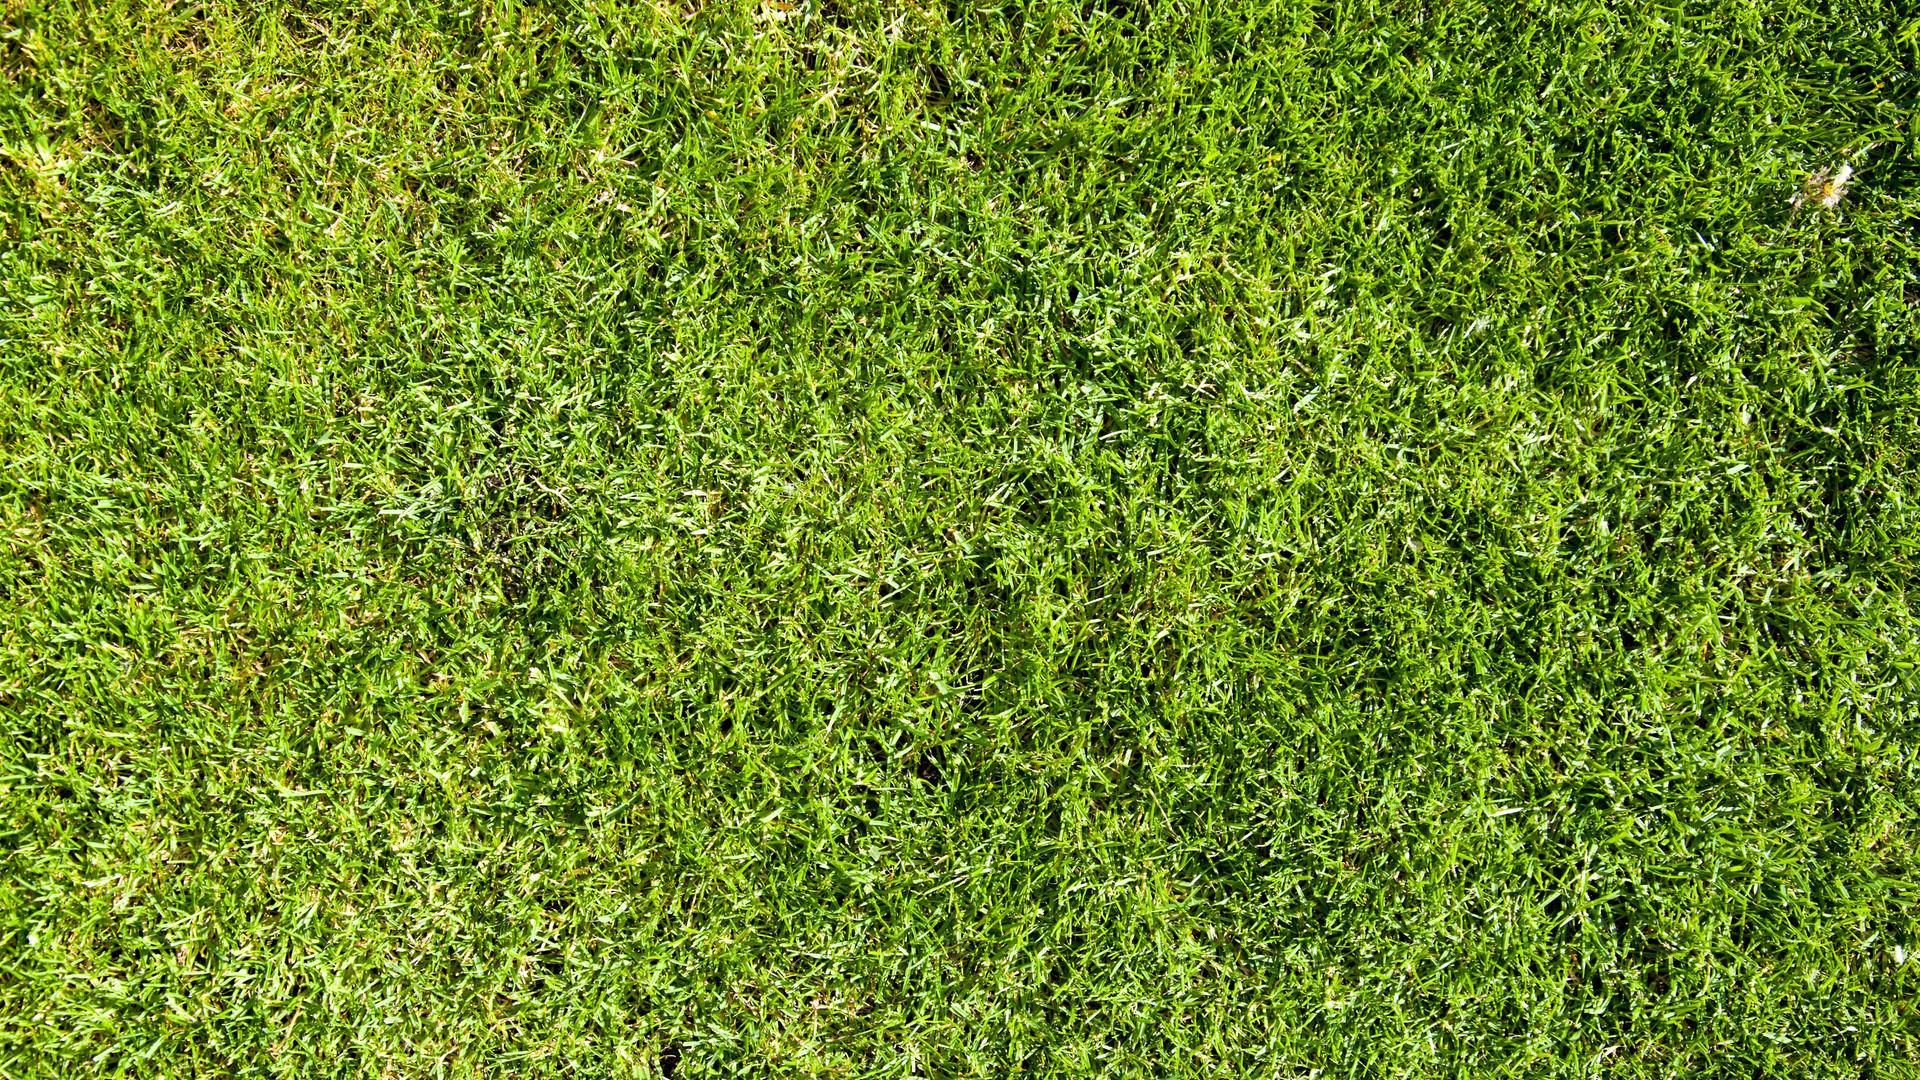 Von oben fotografiert: Grüner, perfekt geschnittner Rasen.